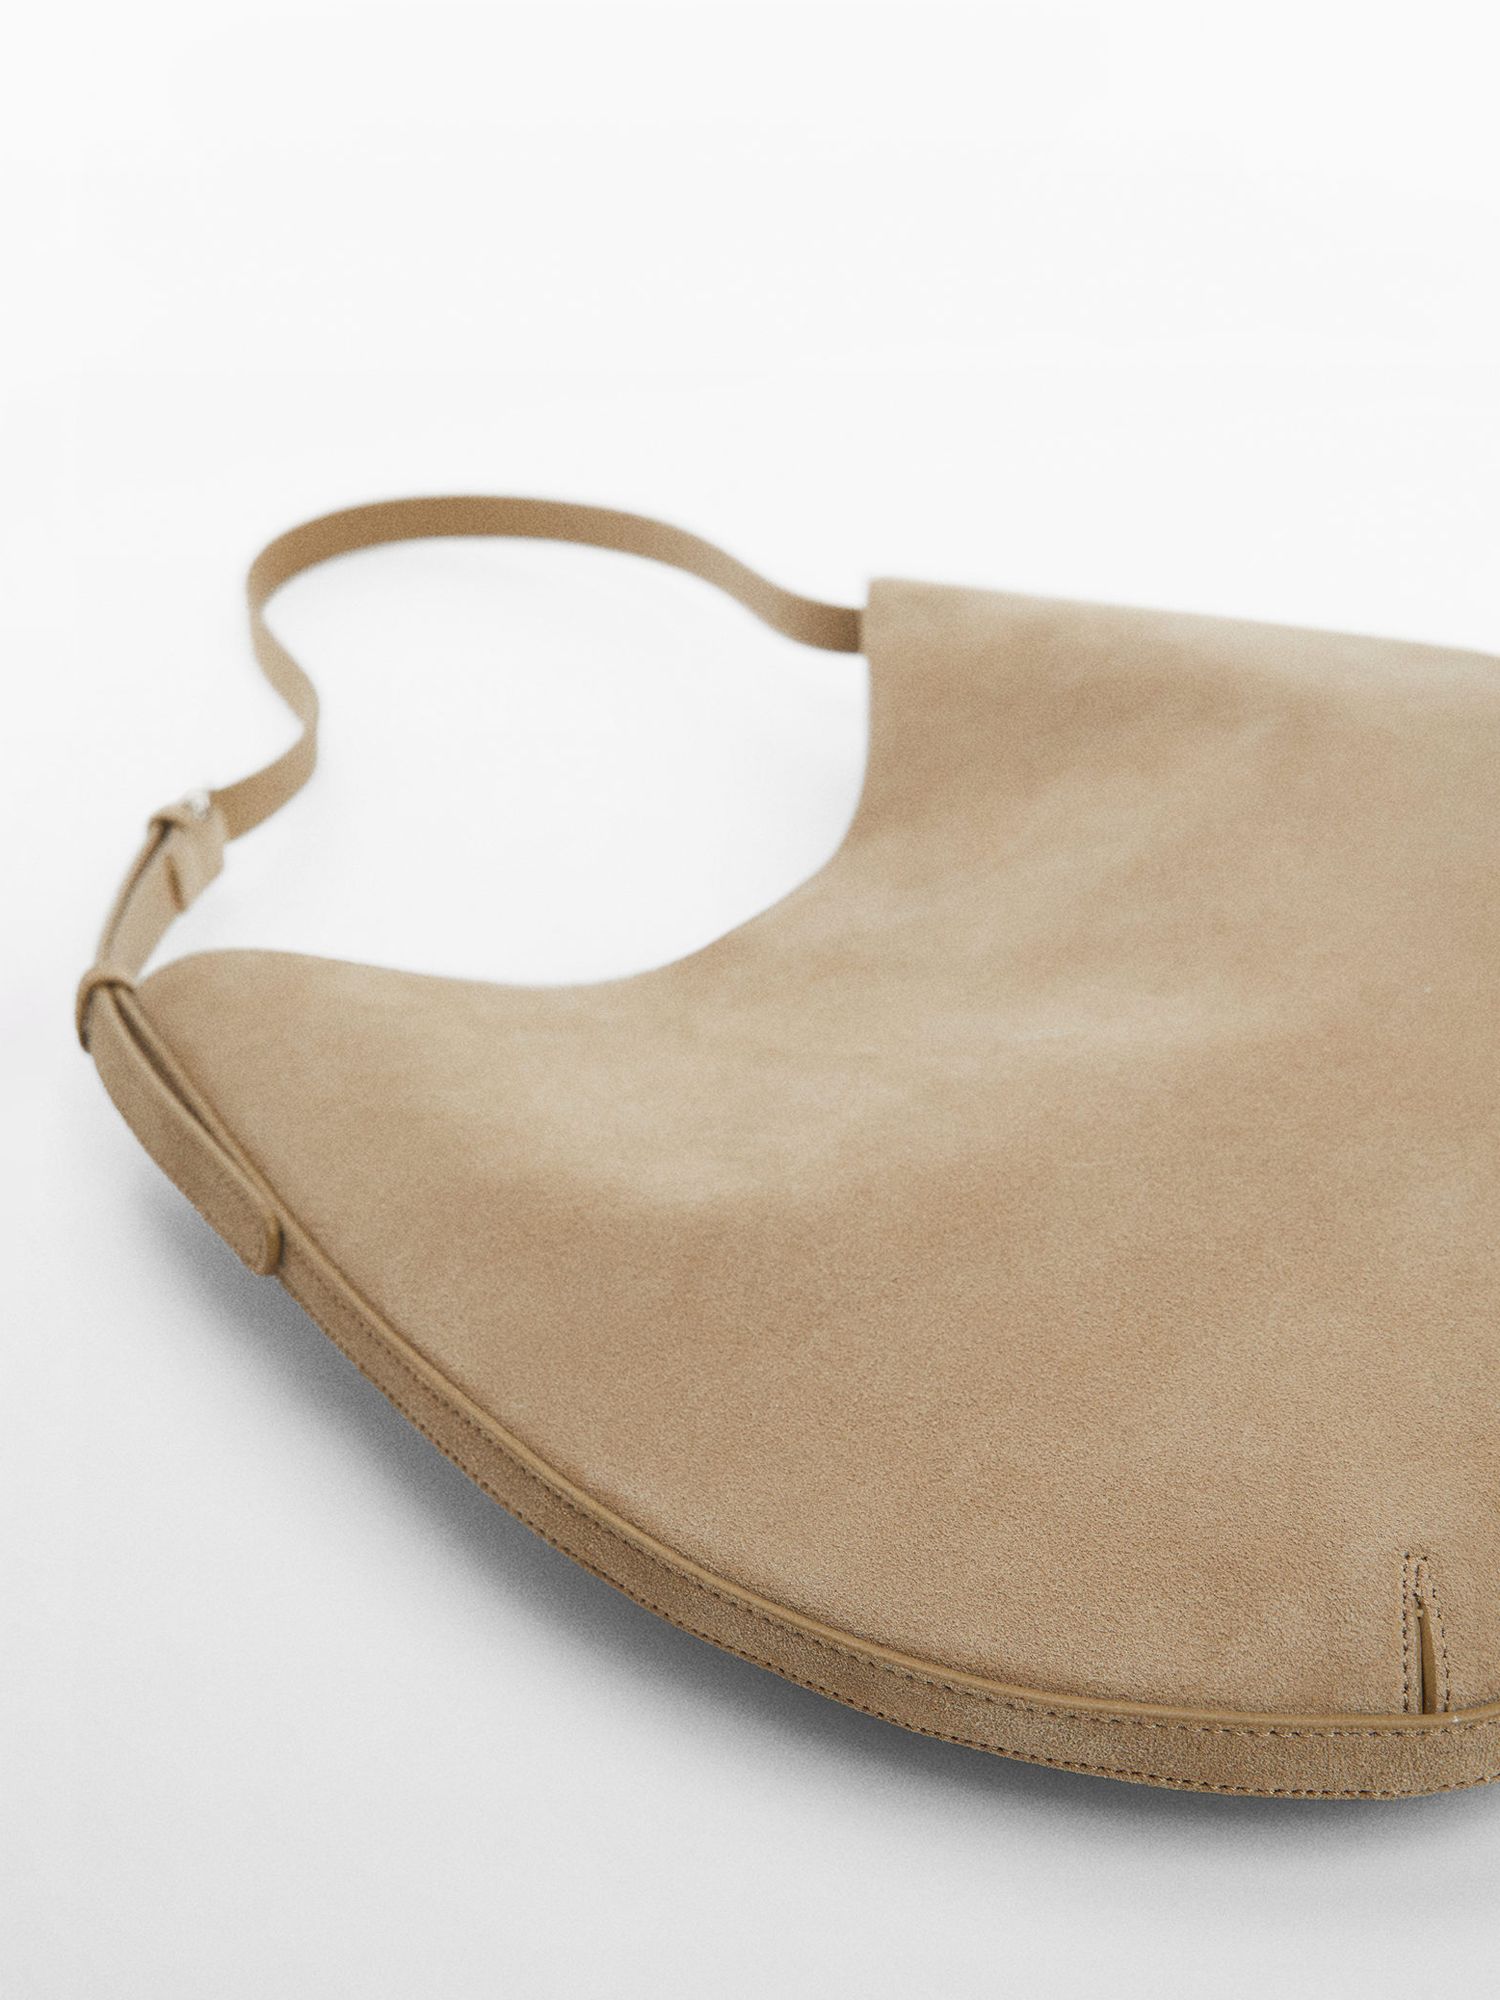 Buy Mango Romeo Leather Shoulder Bag, Light Beige Online at johnlewis.com